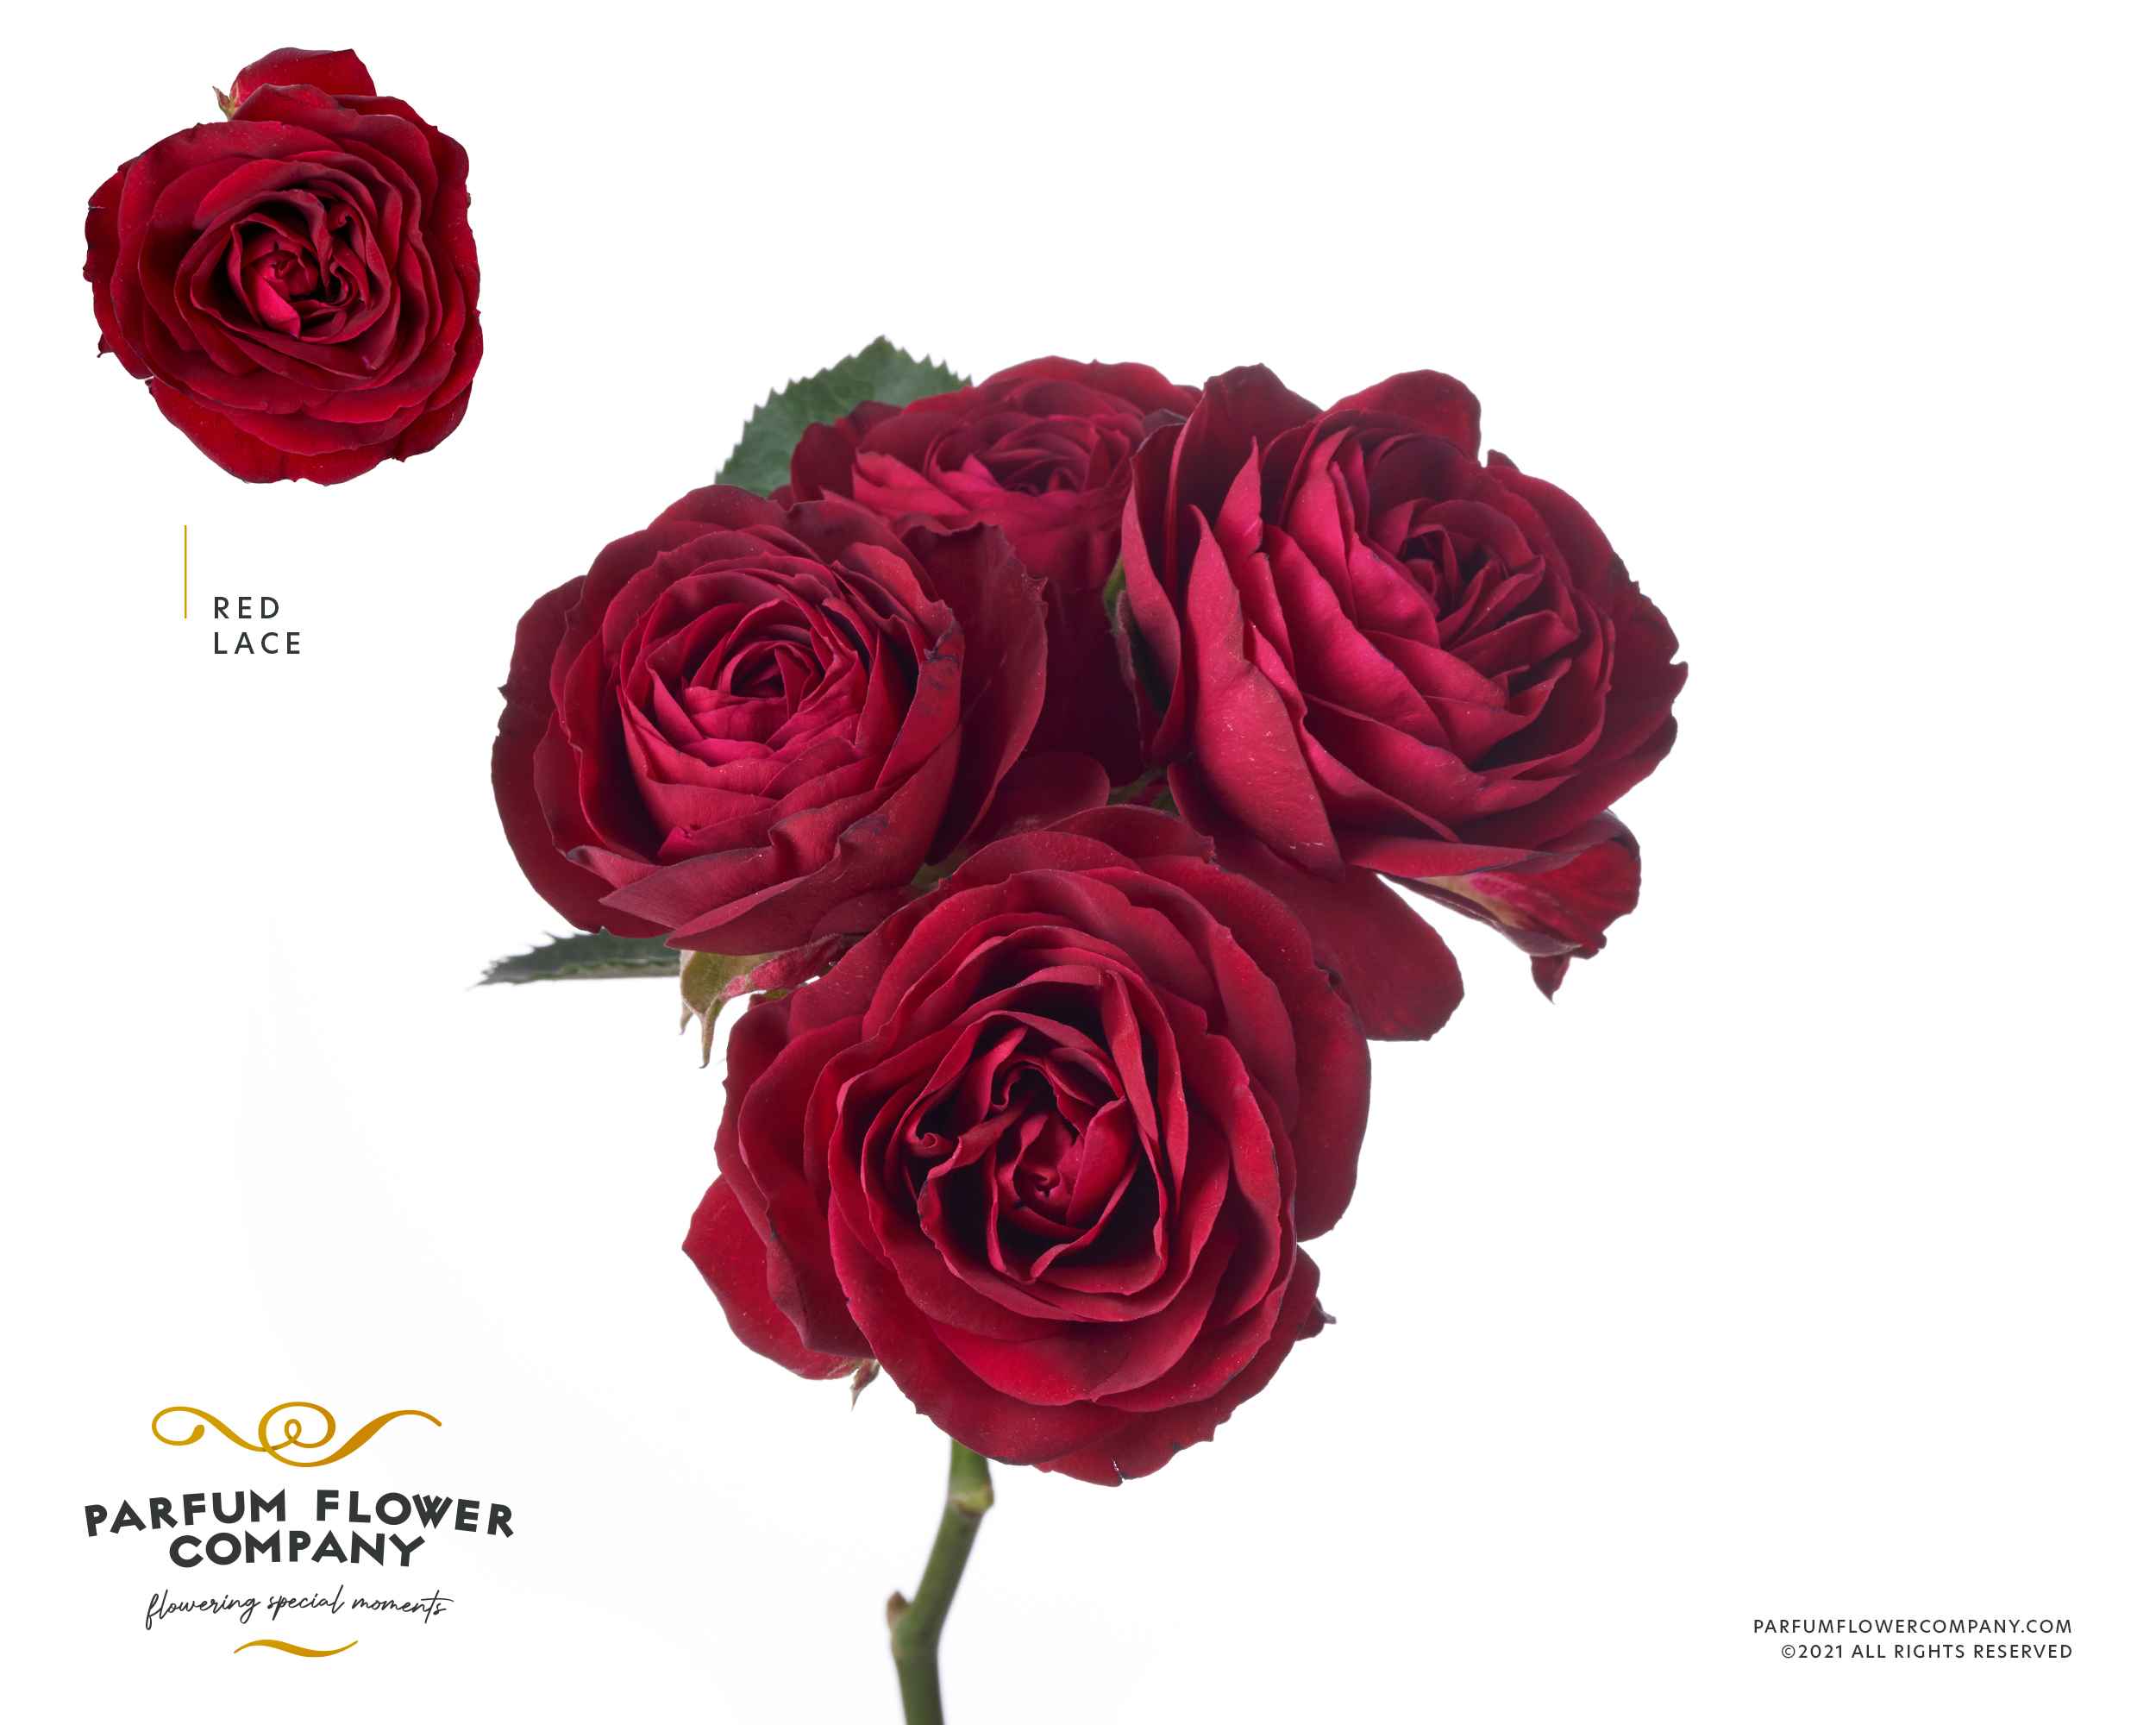 Срезанные цветы оптом Rosa sp lace red от 12шт из Голландии с доставкой по России